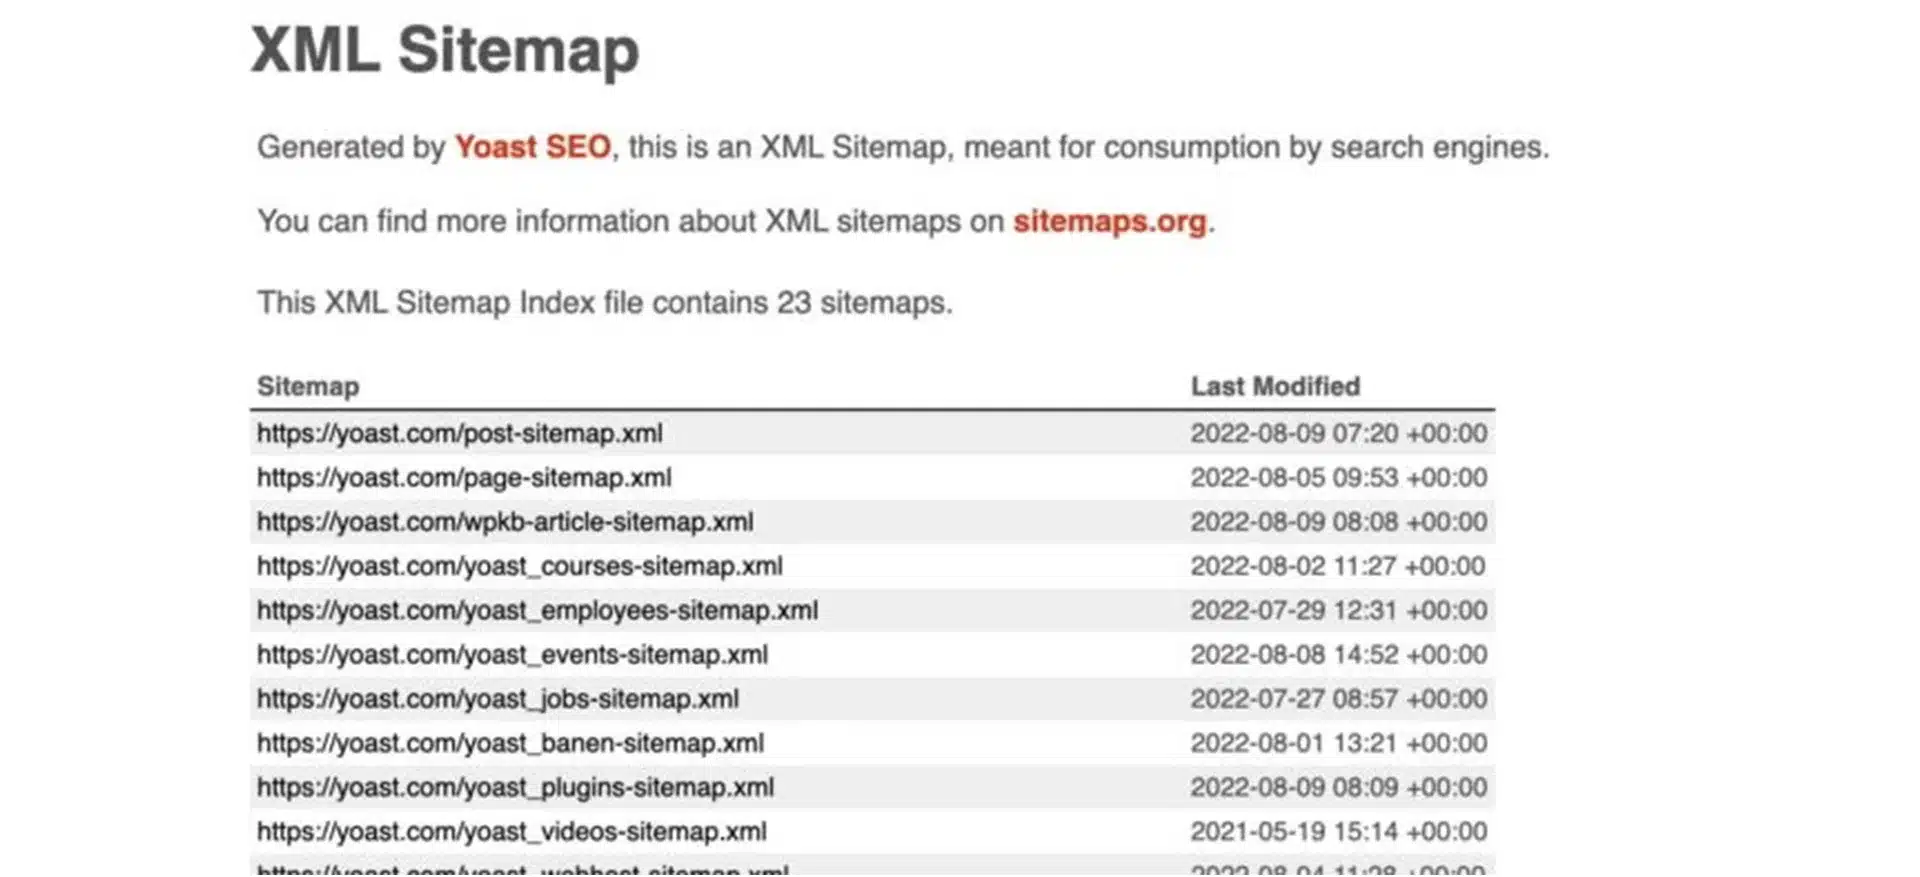 Comment le Sitemap XML influence l'indexation ?